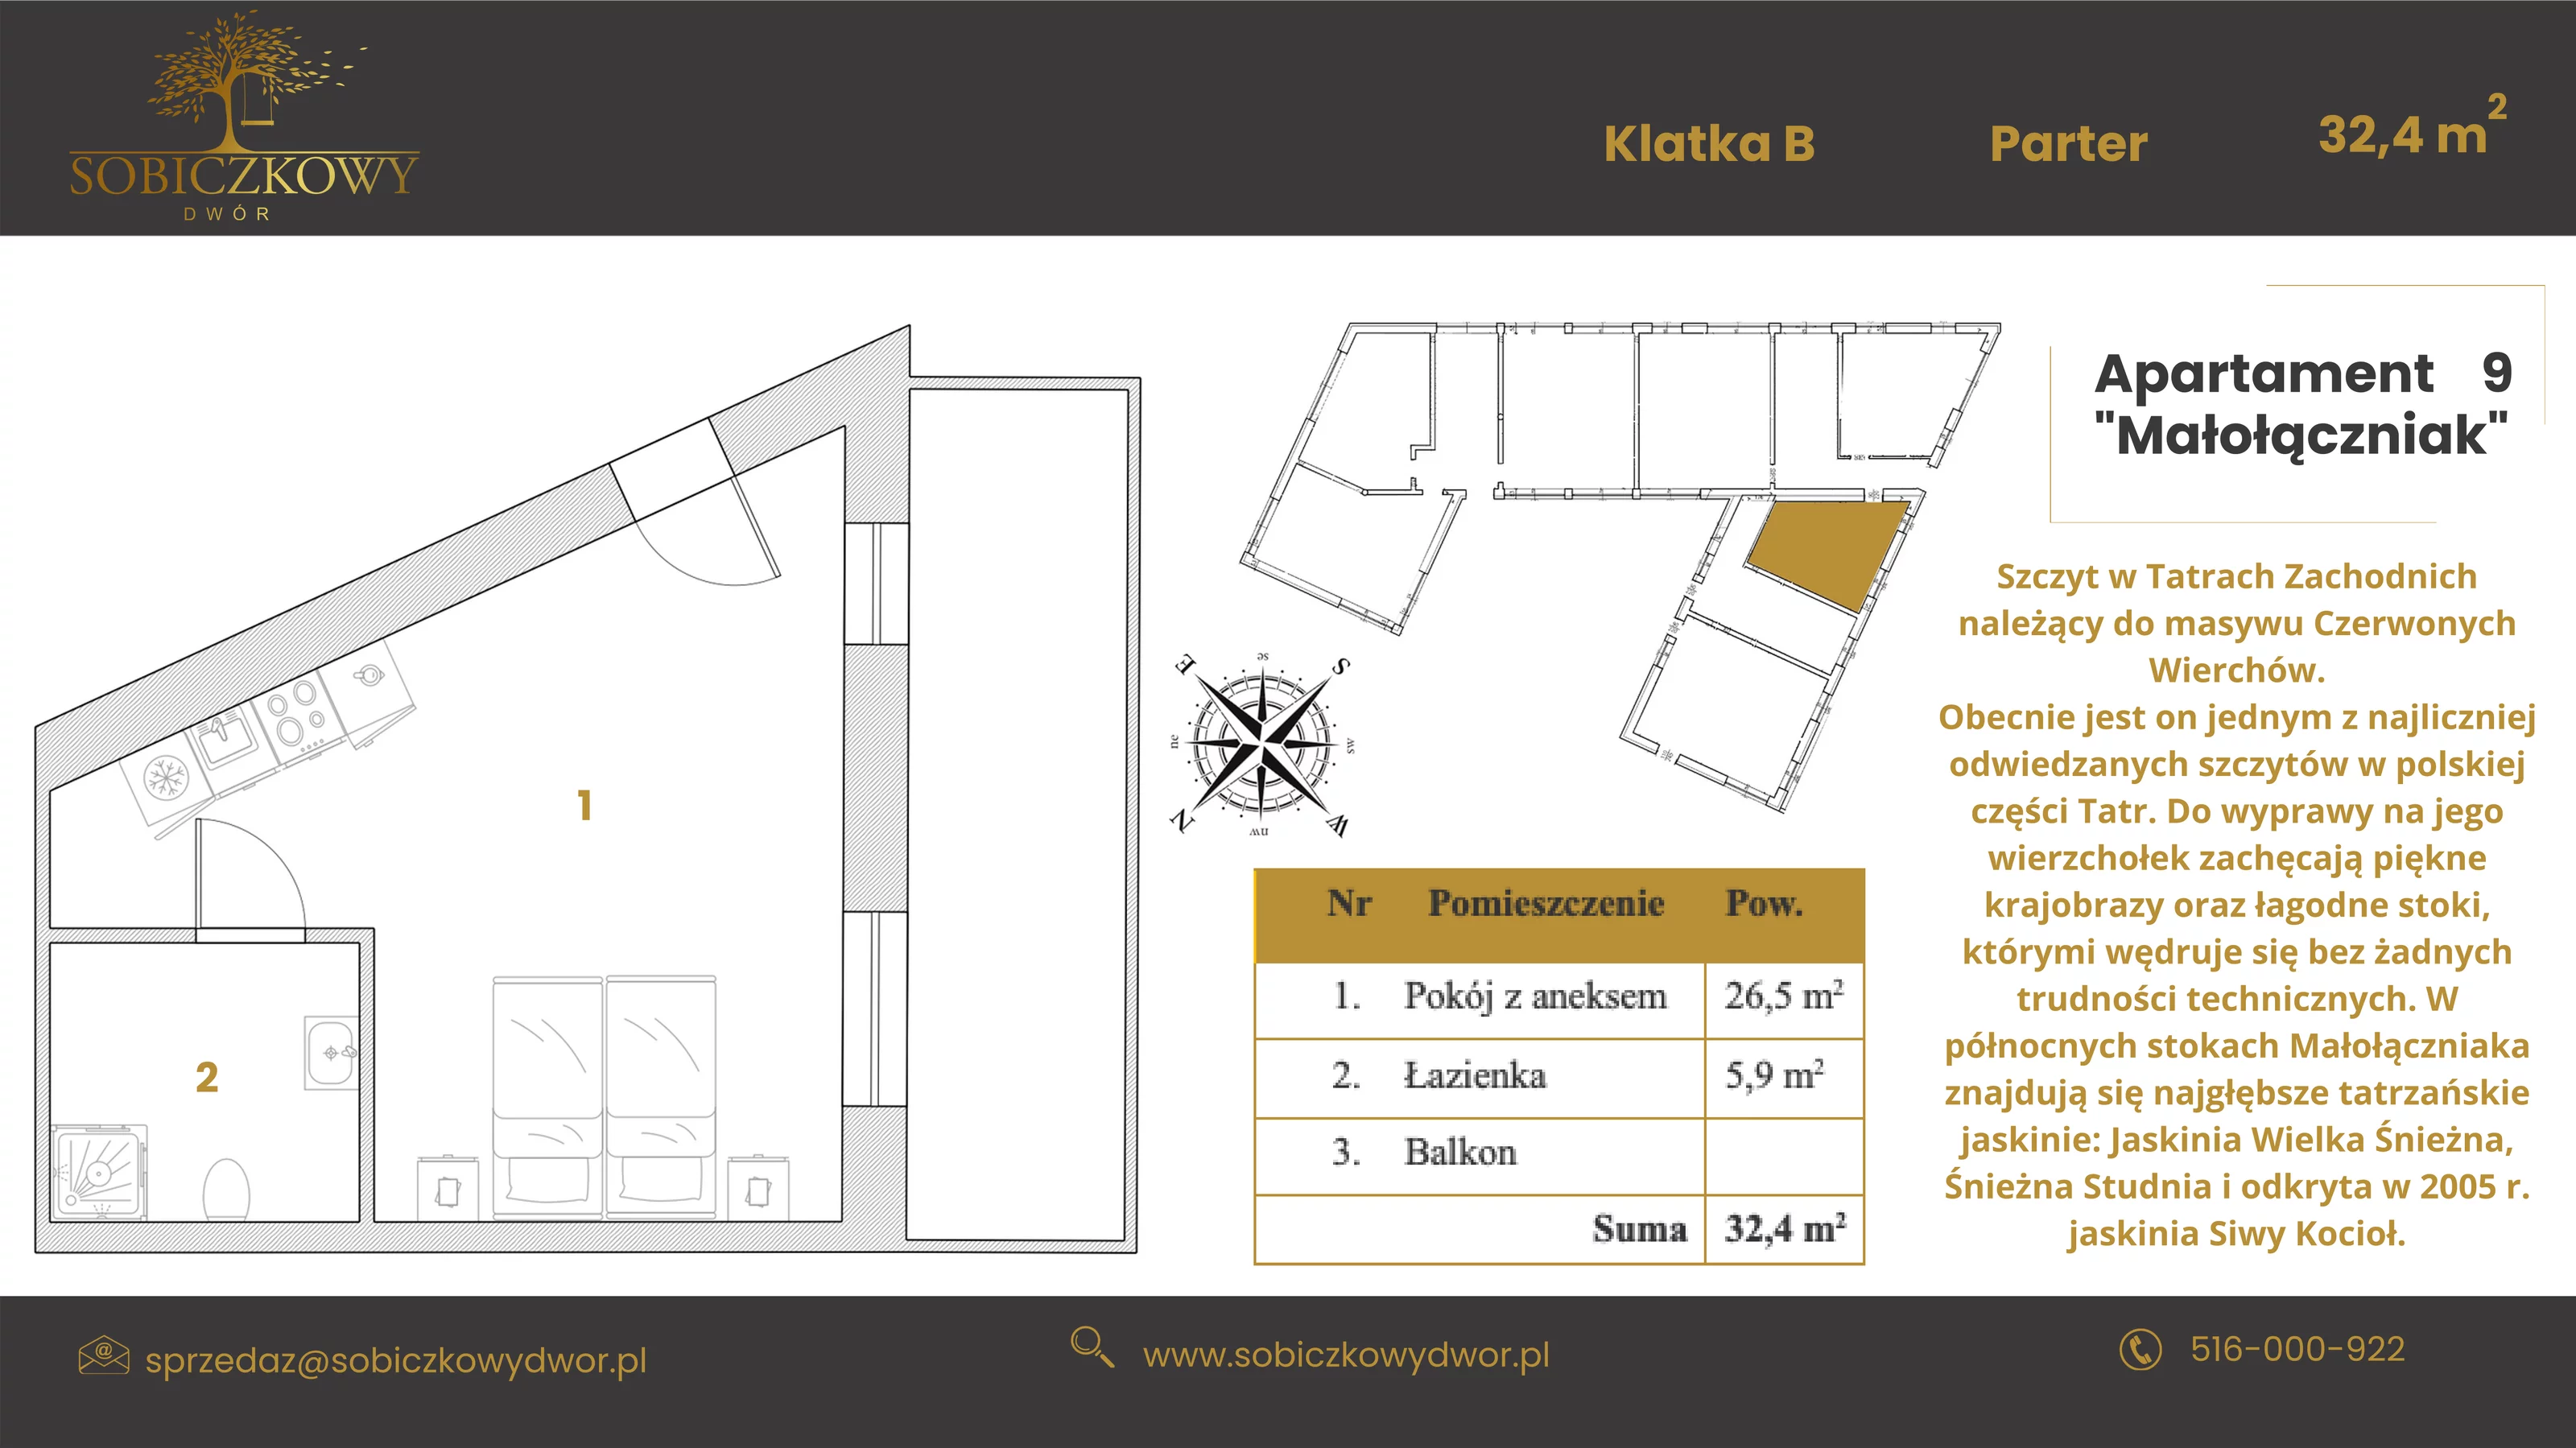 Apartament 32,40 m², parter, oferta nr 9 "Małołączniak", Sobiczkowy Dwór, Kościelisko, ul. Sobiczkowa Bór 1